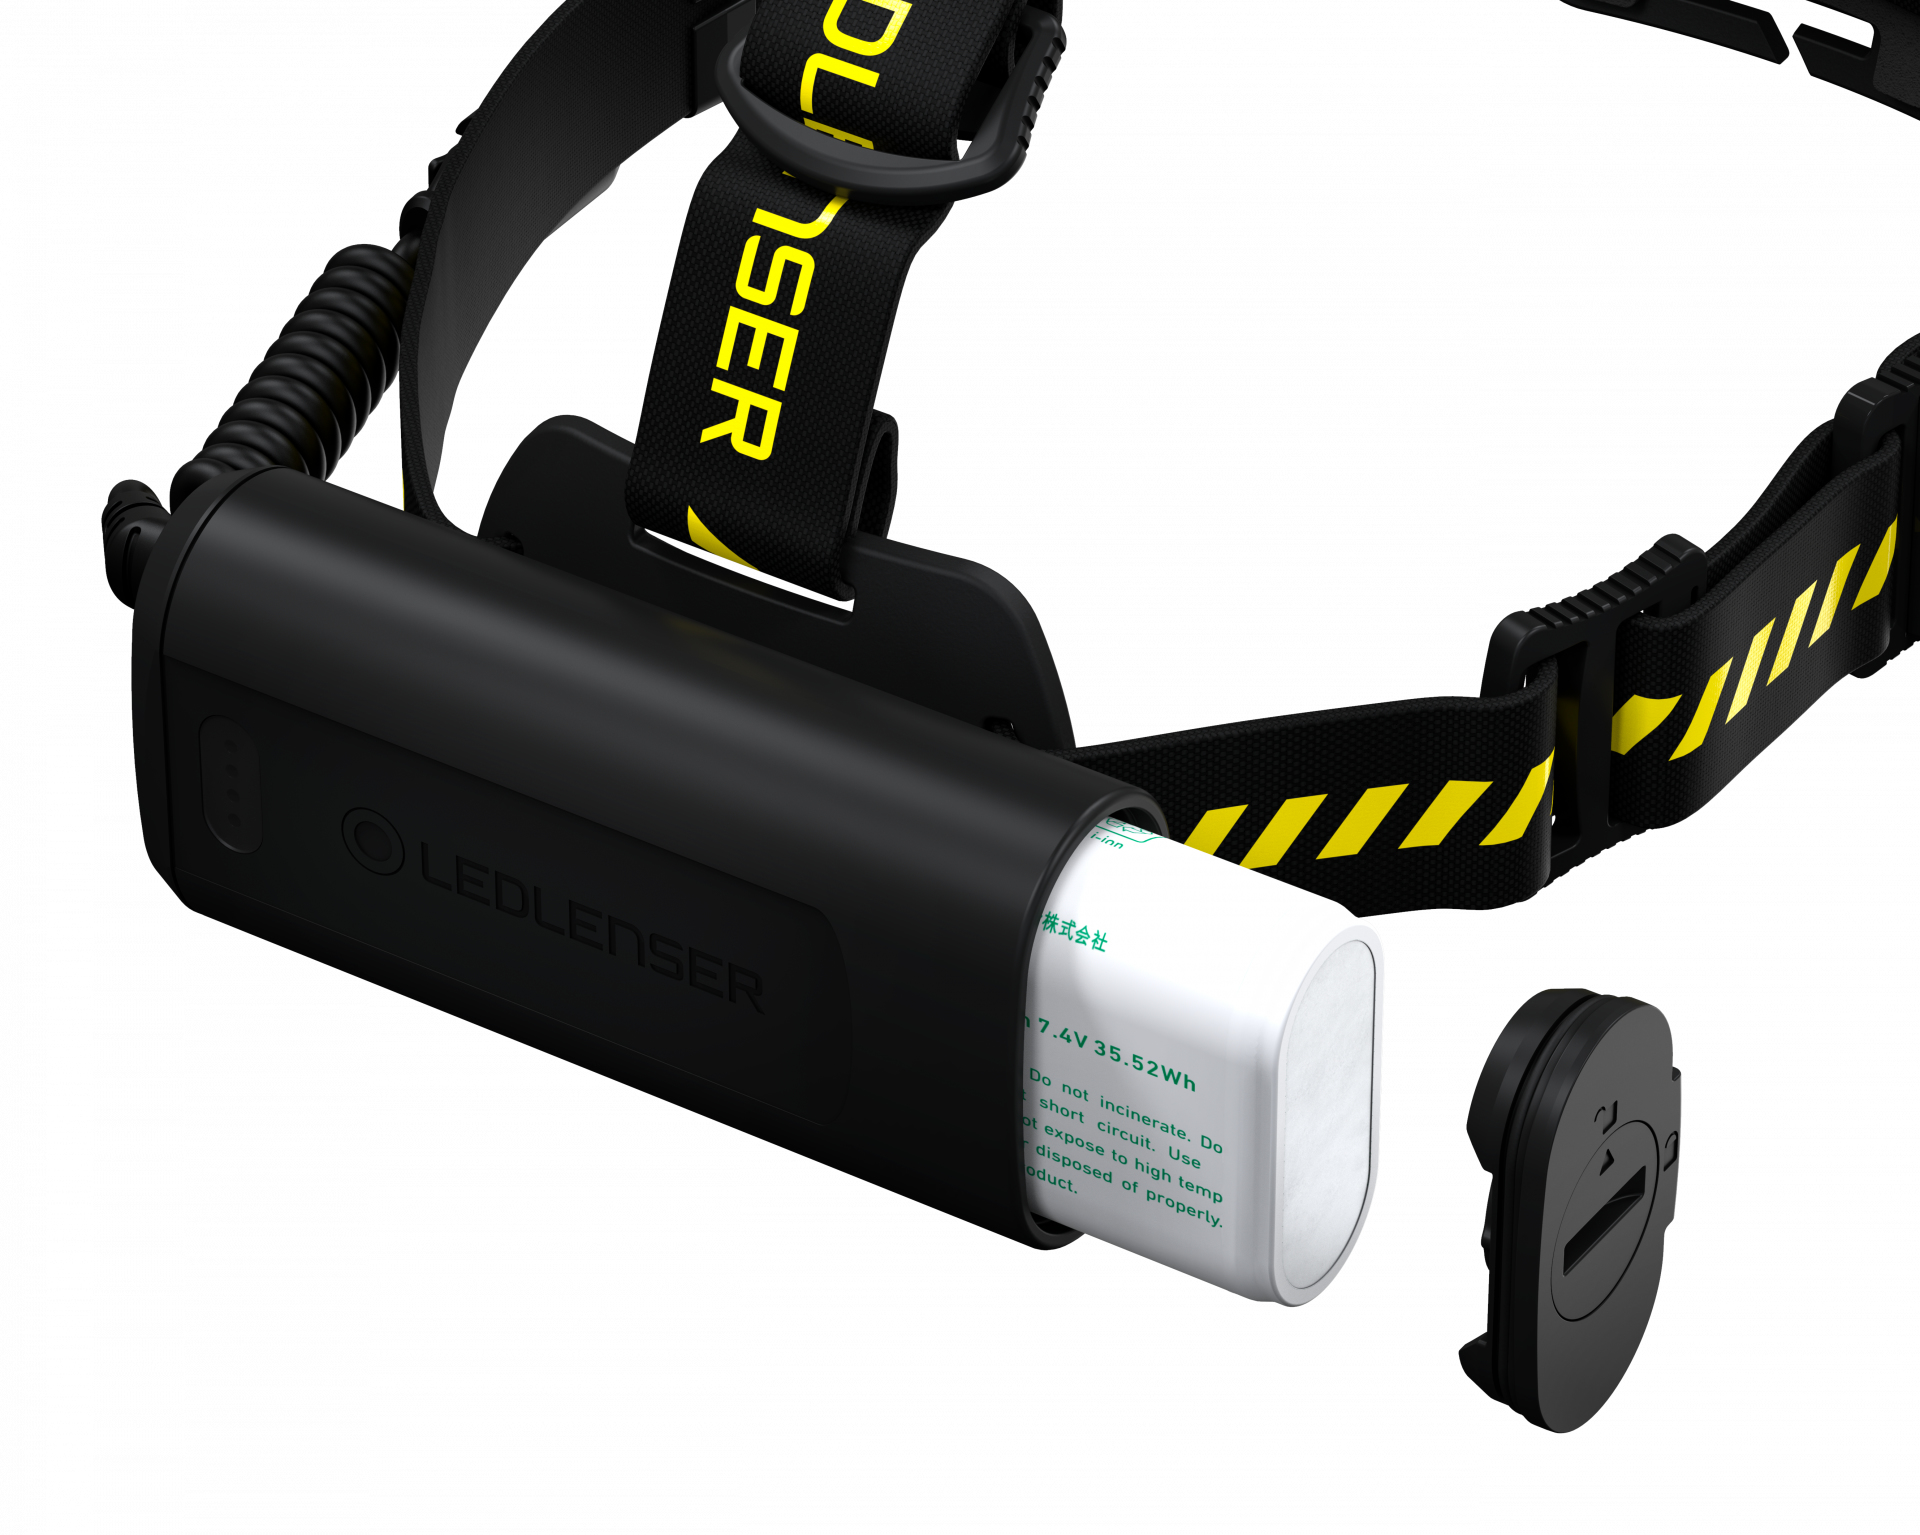 LED Lenser H15R Work - Stirnband-Taschenlampe - Schwarz - Gelb - IP67 - LED - 1 Lampen - 2500 lm